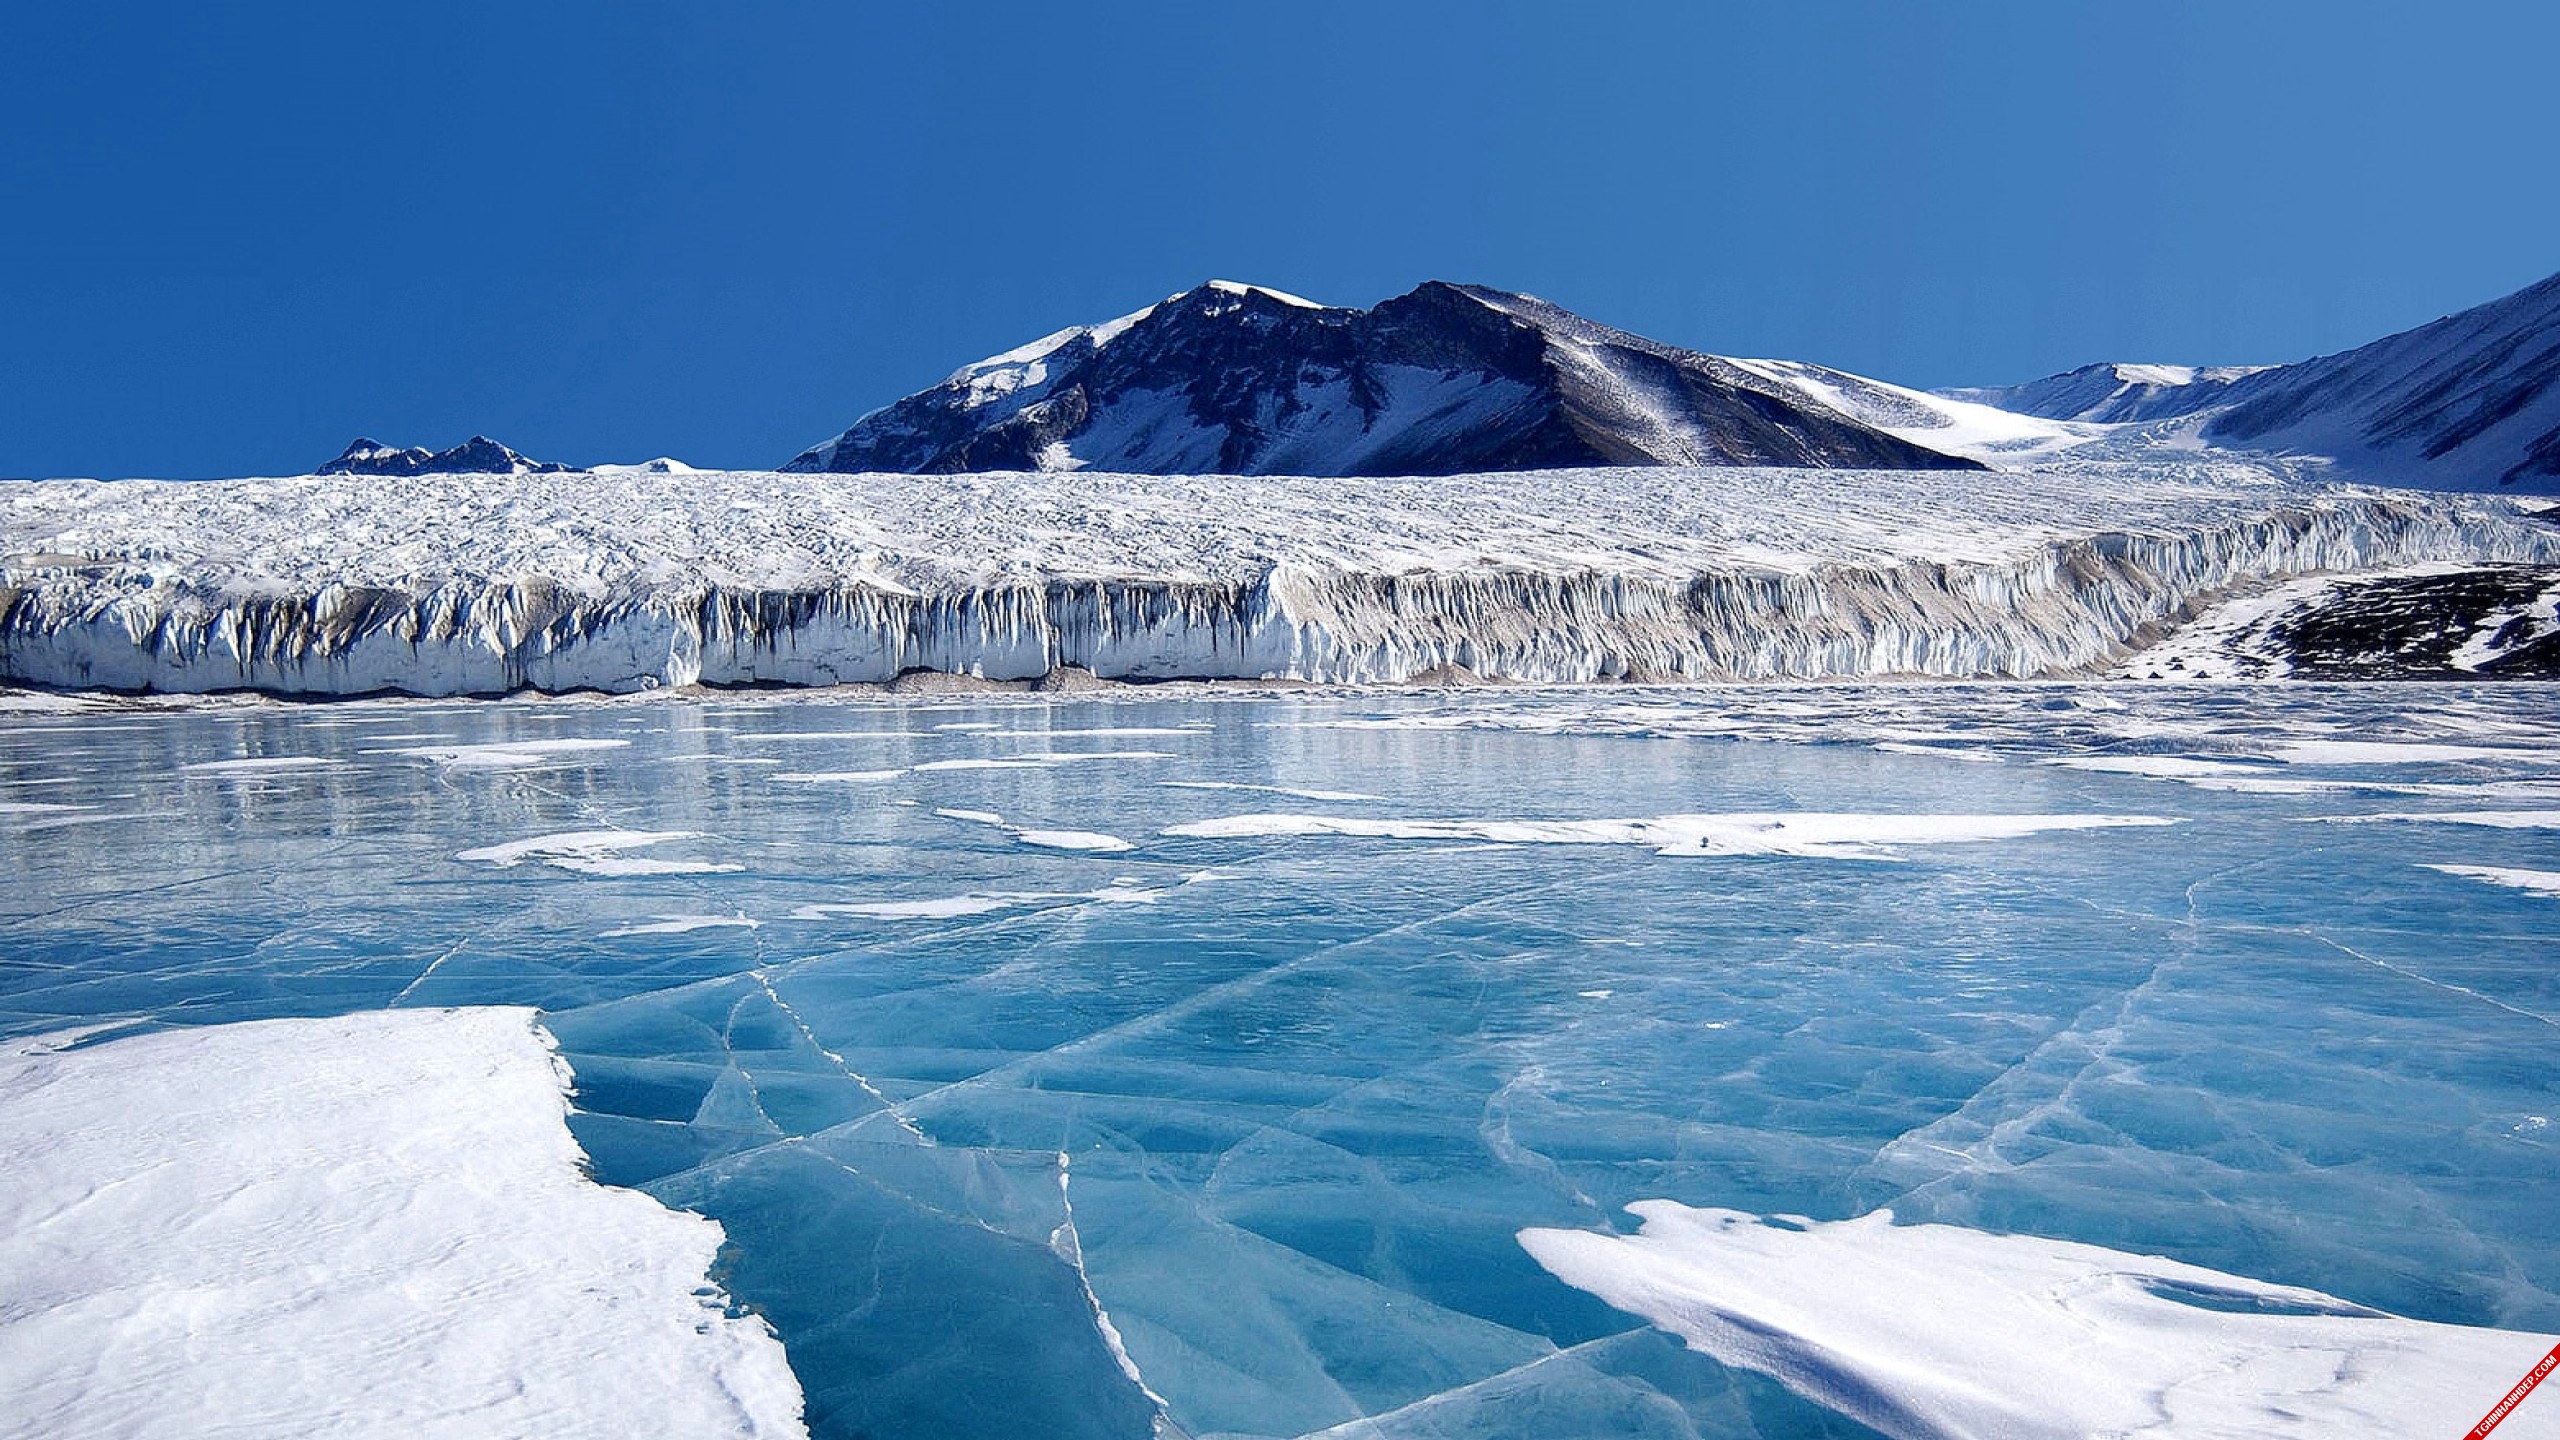 Cận cảnh vẻ đẹp của những tảng băng trong mùa đông